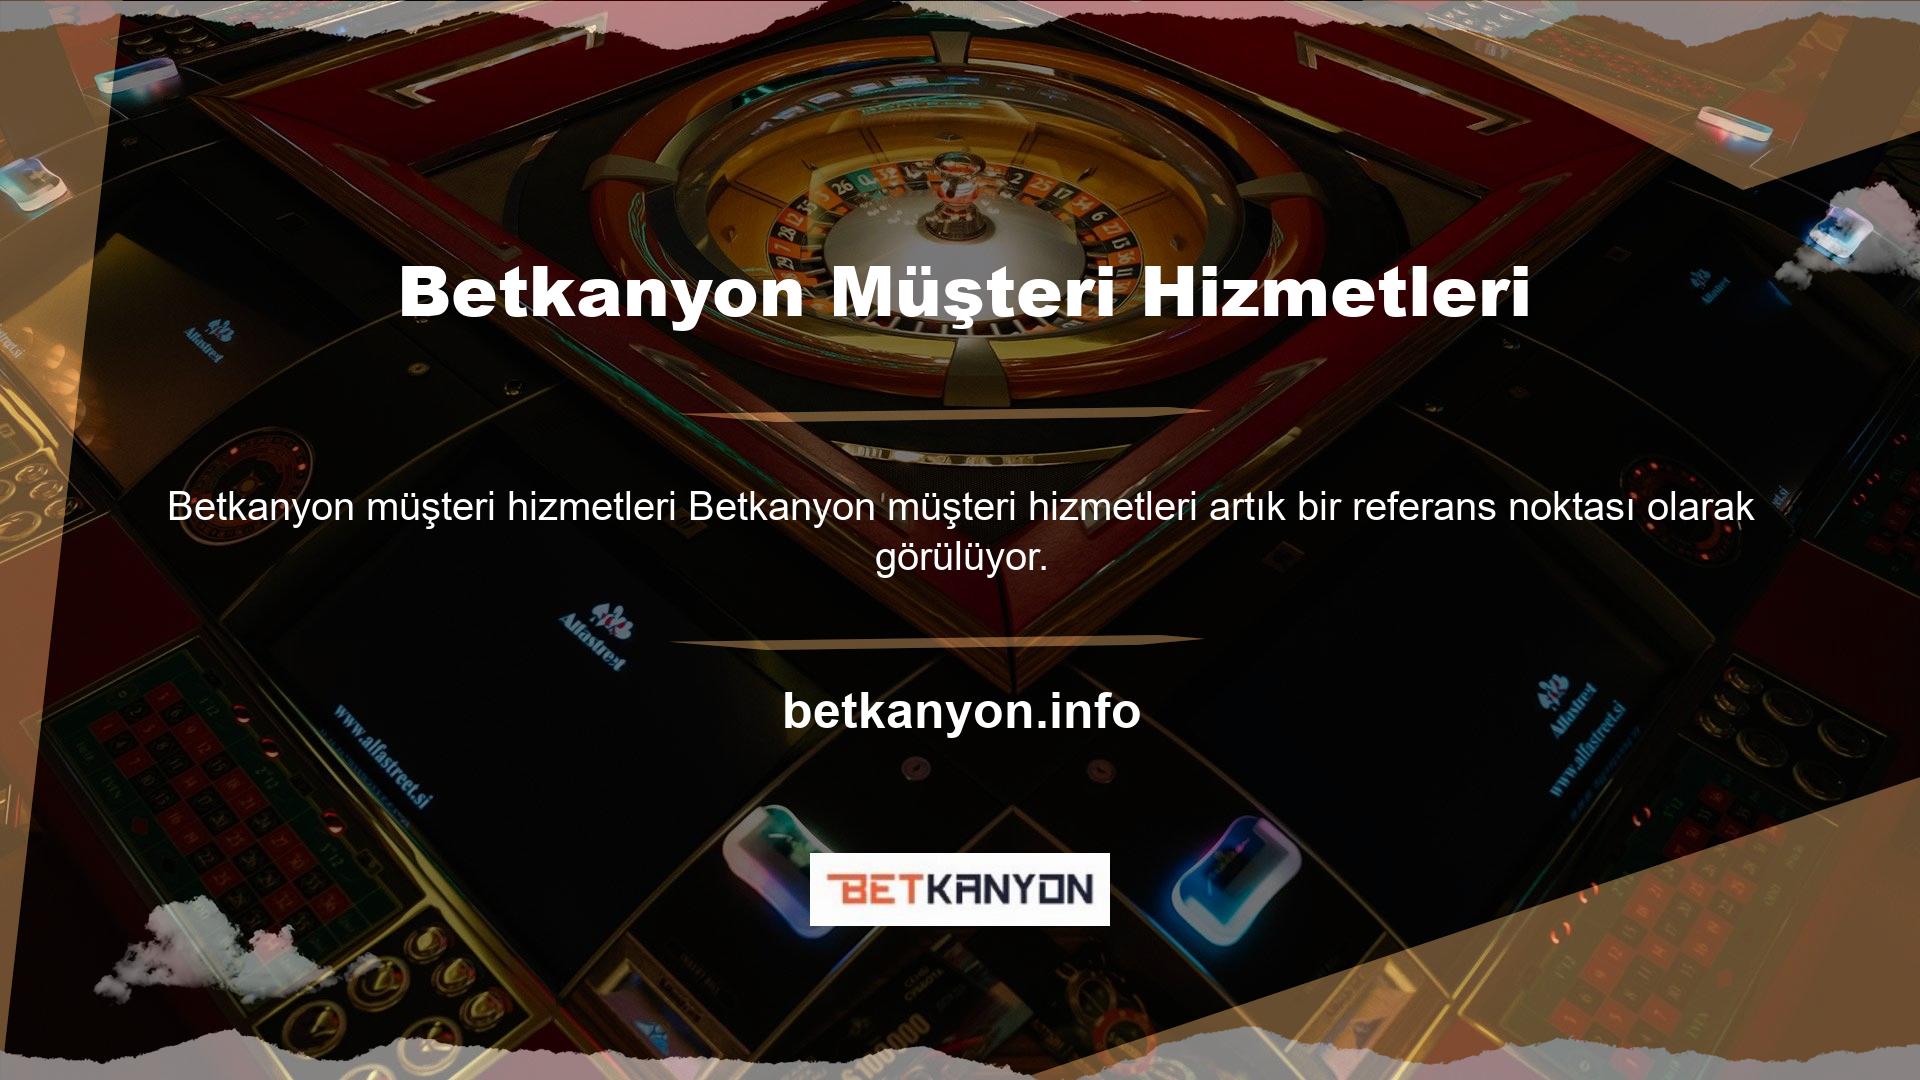 Canlı bahis siteleri Türk casino pazarına girmiştir ancak sektör düşüştedir